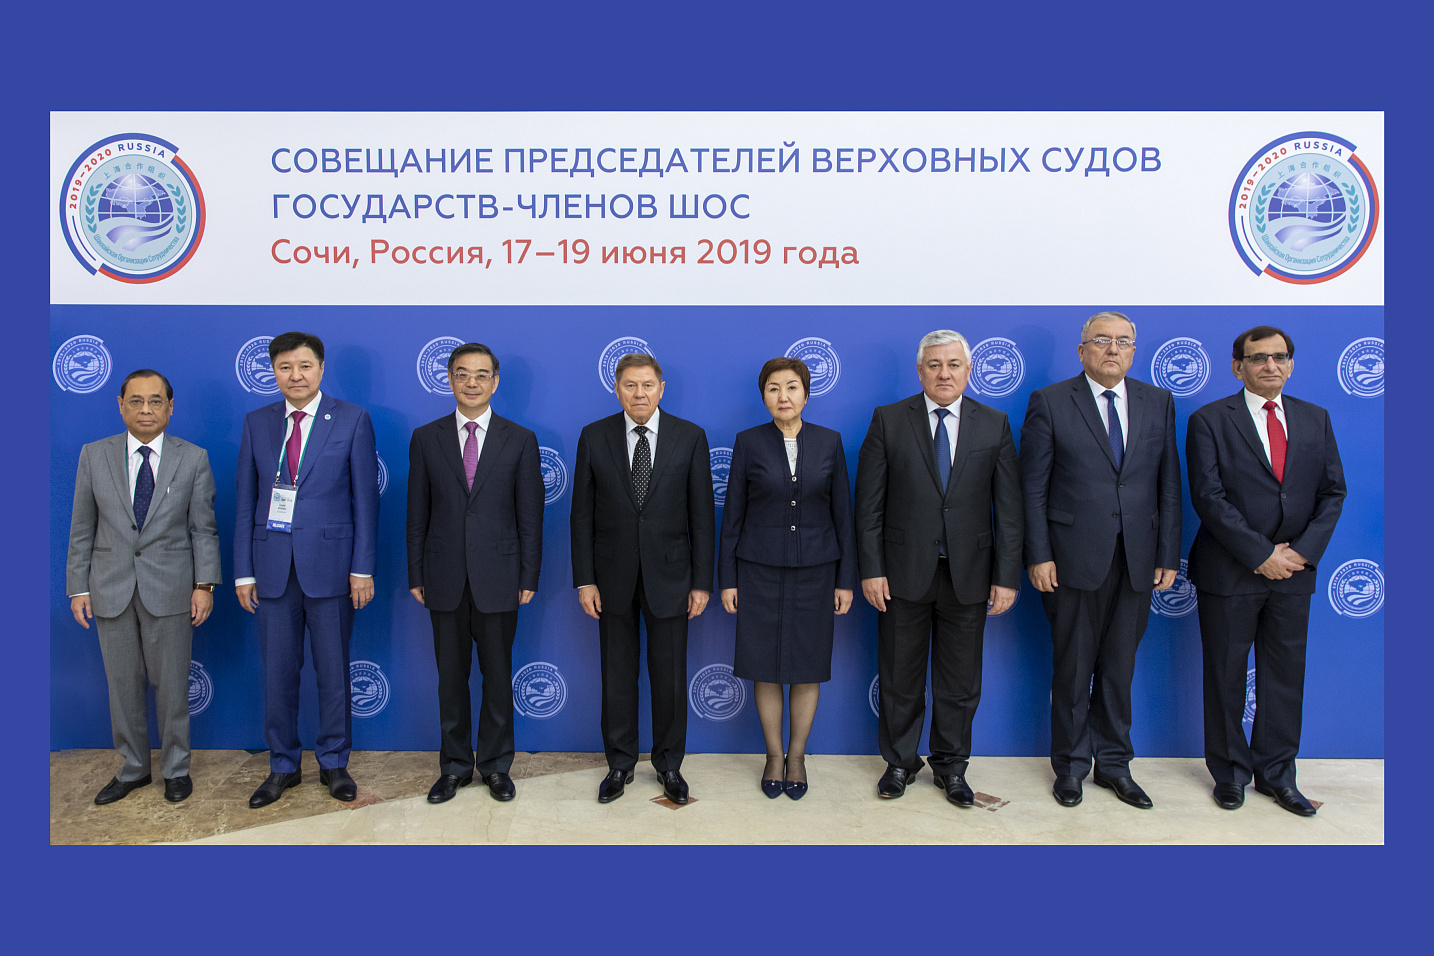 17 – 19 июня 2019 года в Сочи состоялось XIV Совещание председателей Верховных судов государств-членов Шанхайской организации сотрудничества